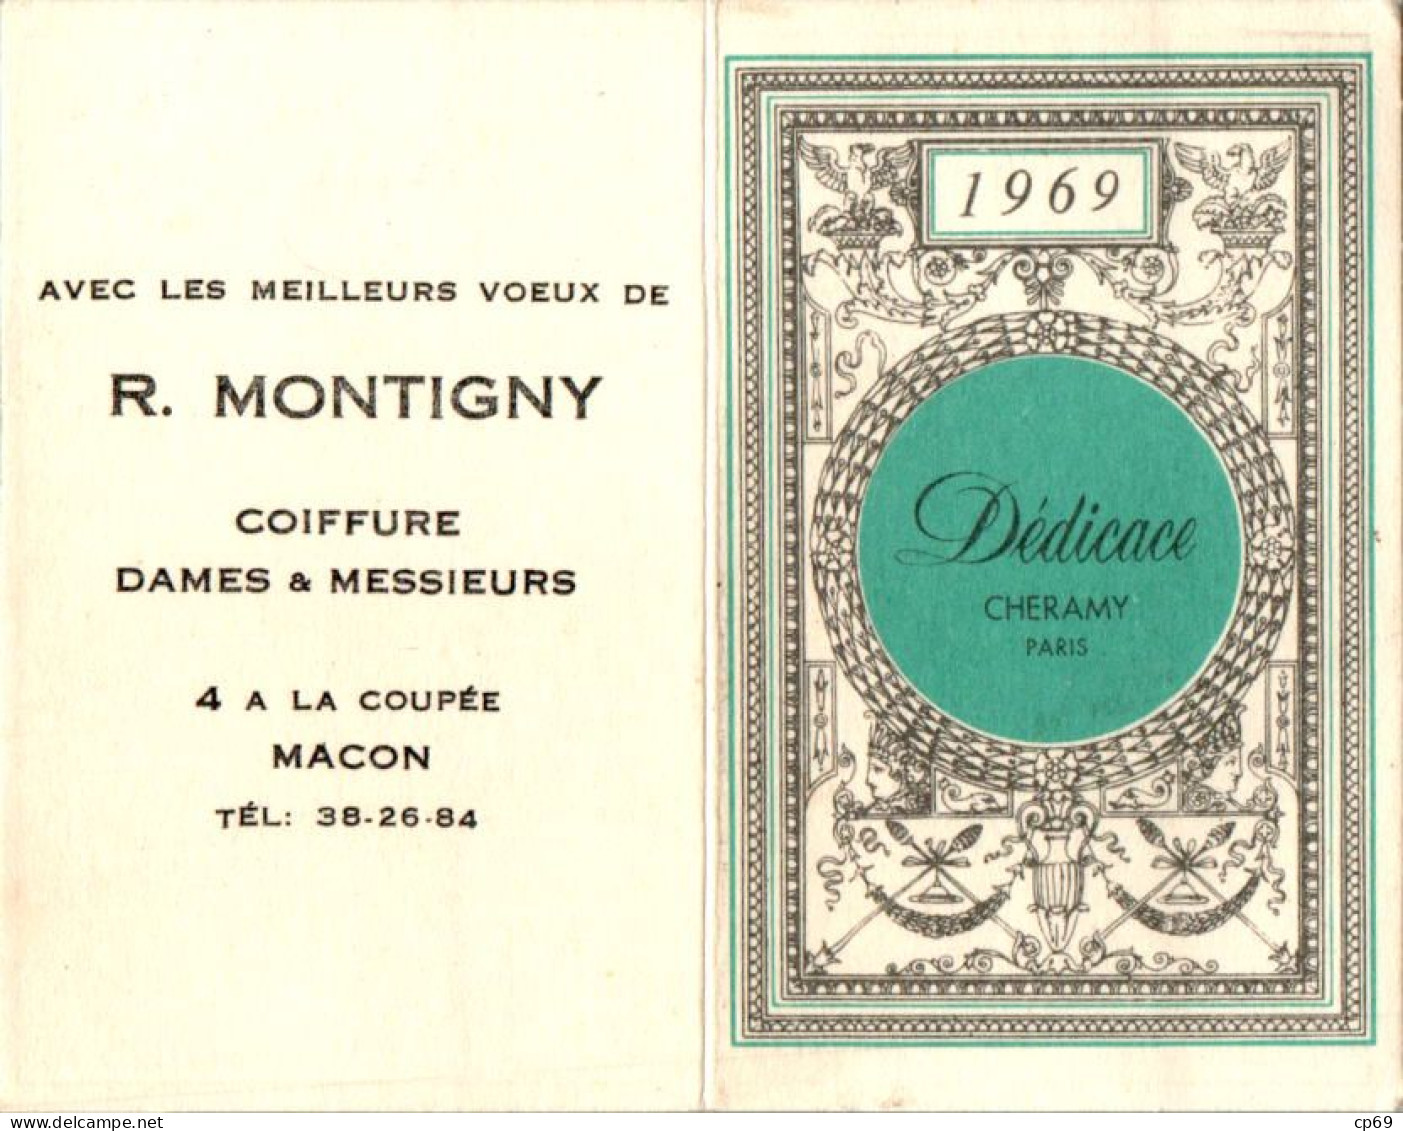 Calendrier De Poche 1969 Parfum Dédicace Cheramy à Paris En TB.Etat - Formato Piccolo : 1961-70